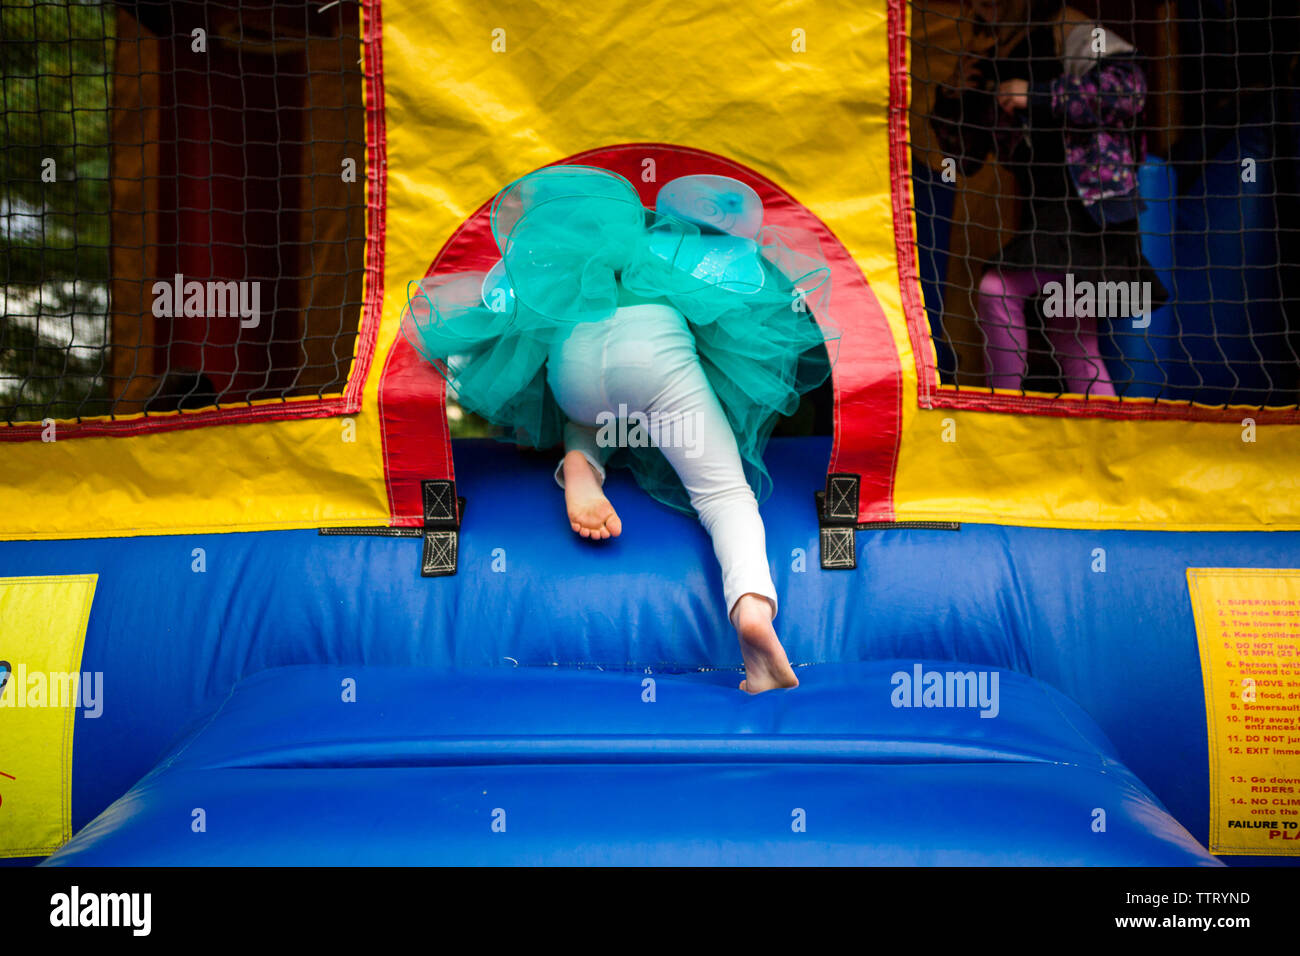 La metà inferiore di un bambino in un tutu arrampicata in un bouncehouse Foto Stock